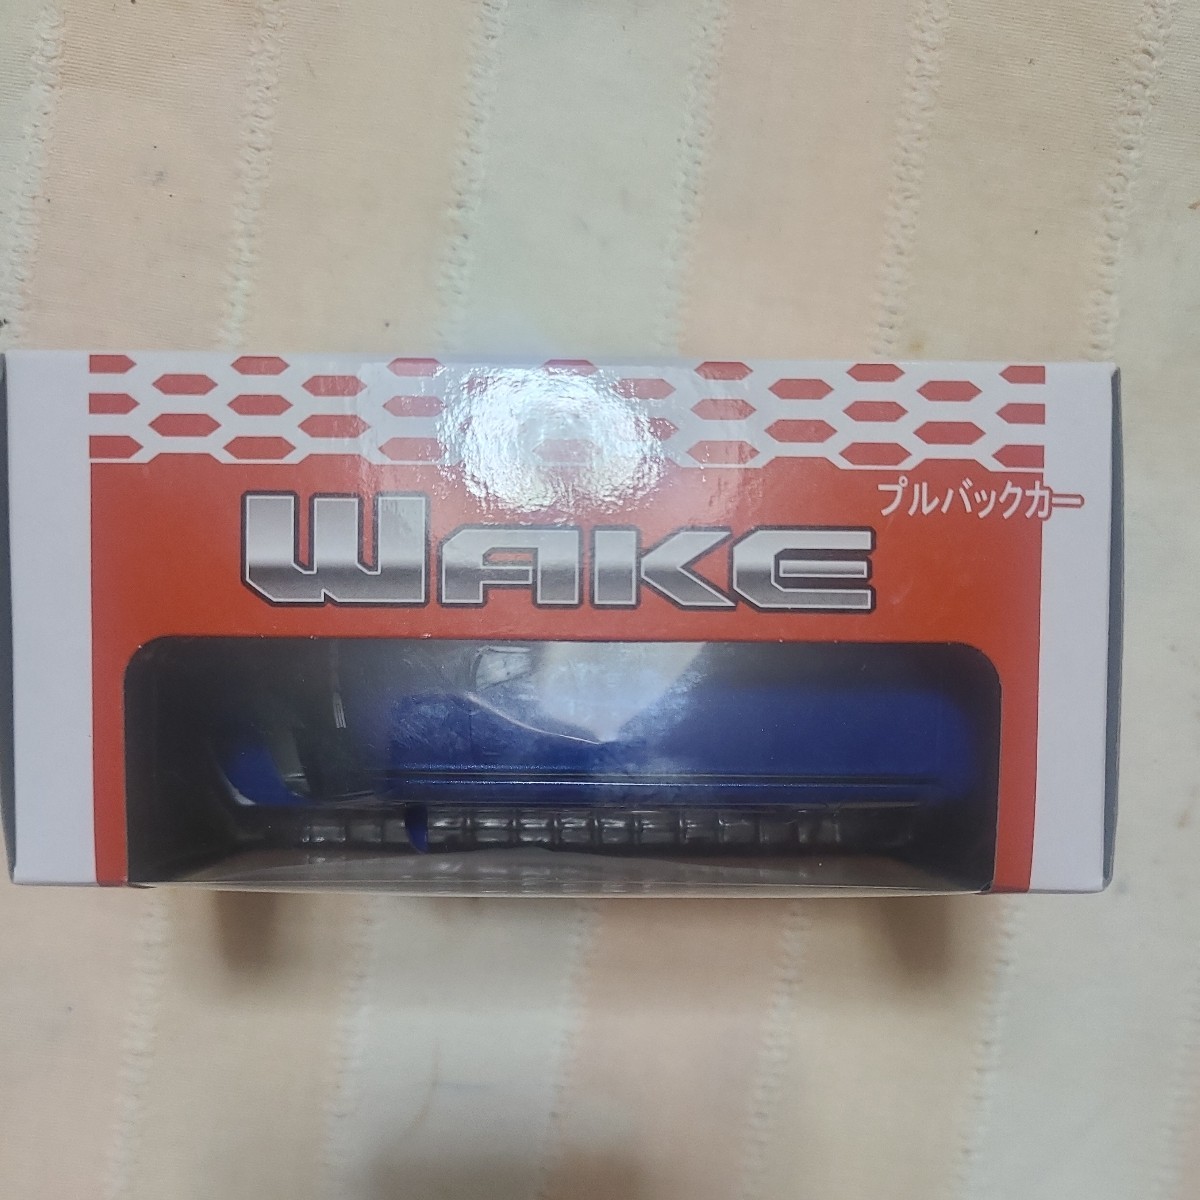 * очень редкий не продается! миникар Daihatsu wake WAKE голубой . темно-синий цвет темно-синий pull-back машина не продается цвет образец 